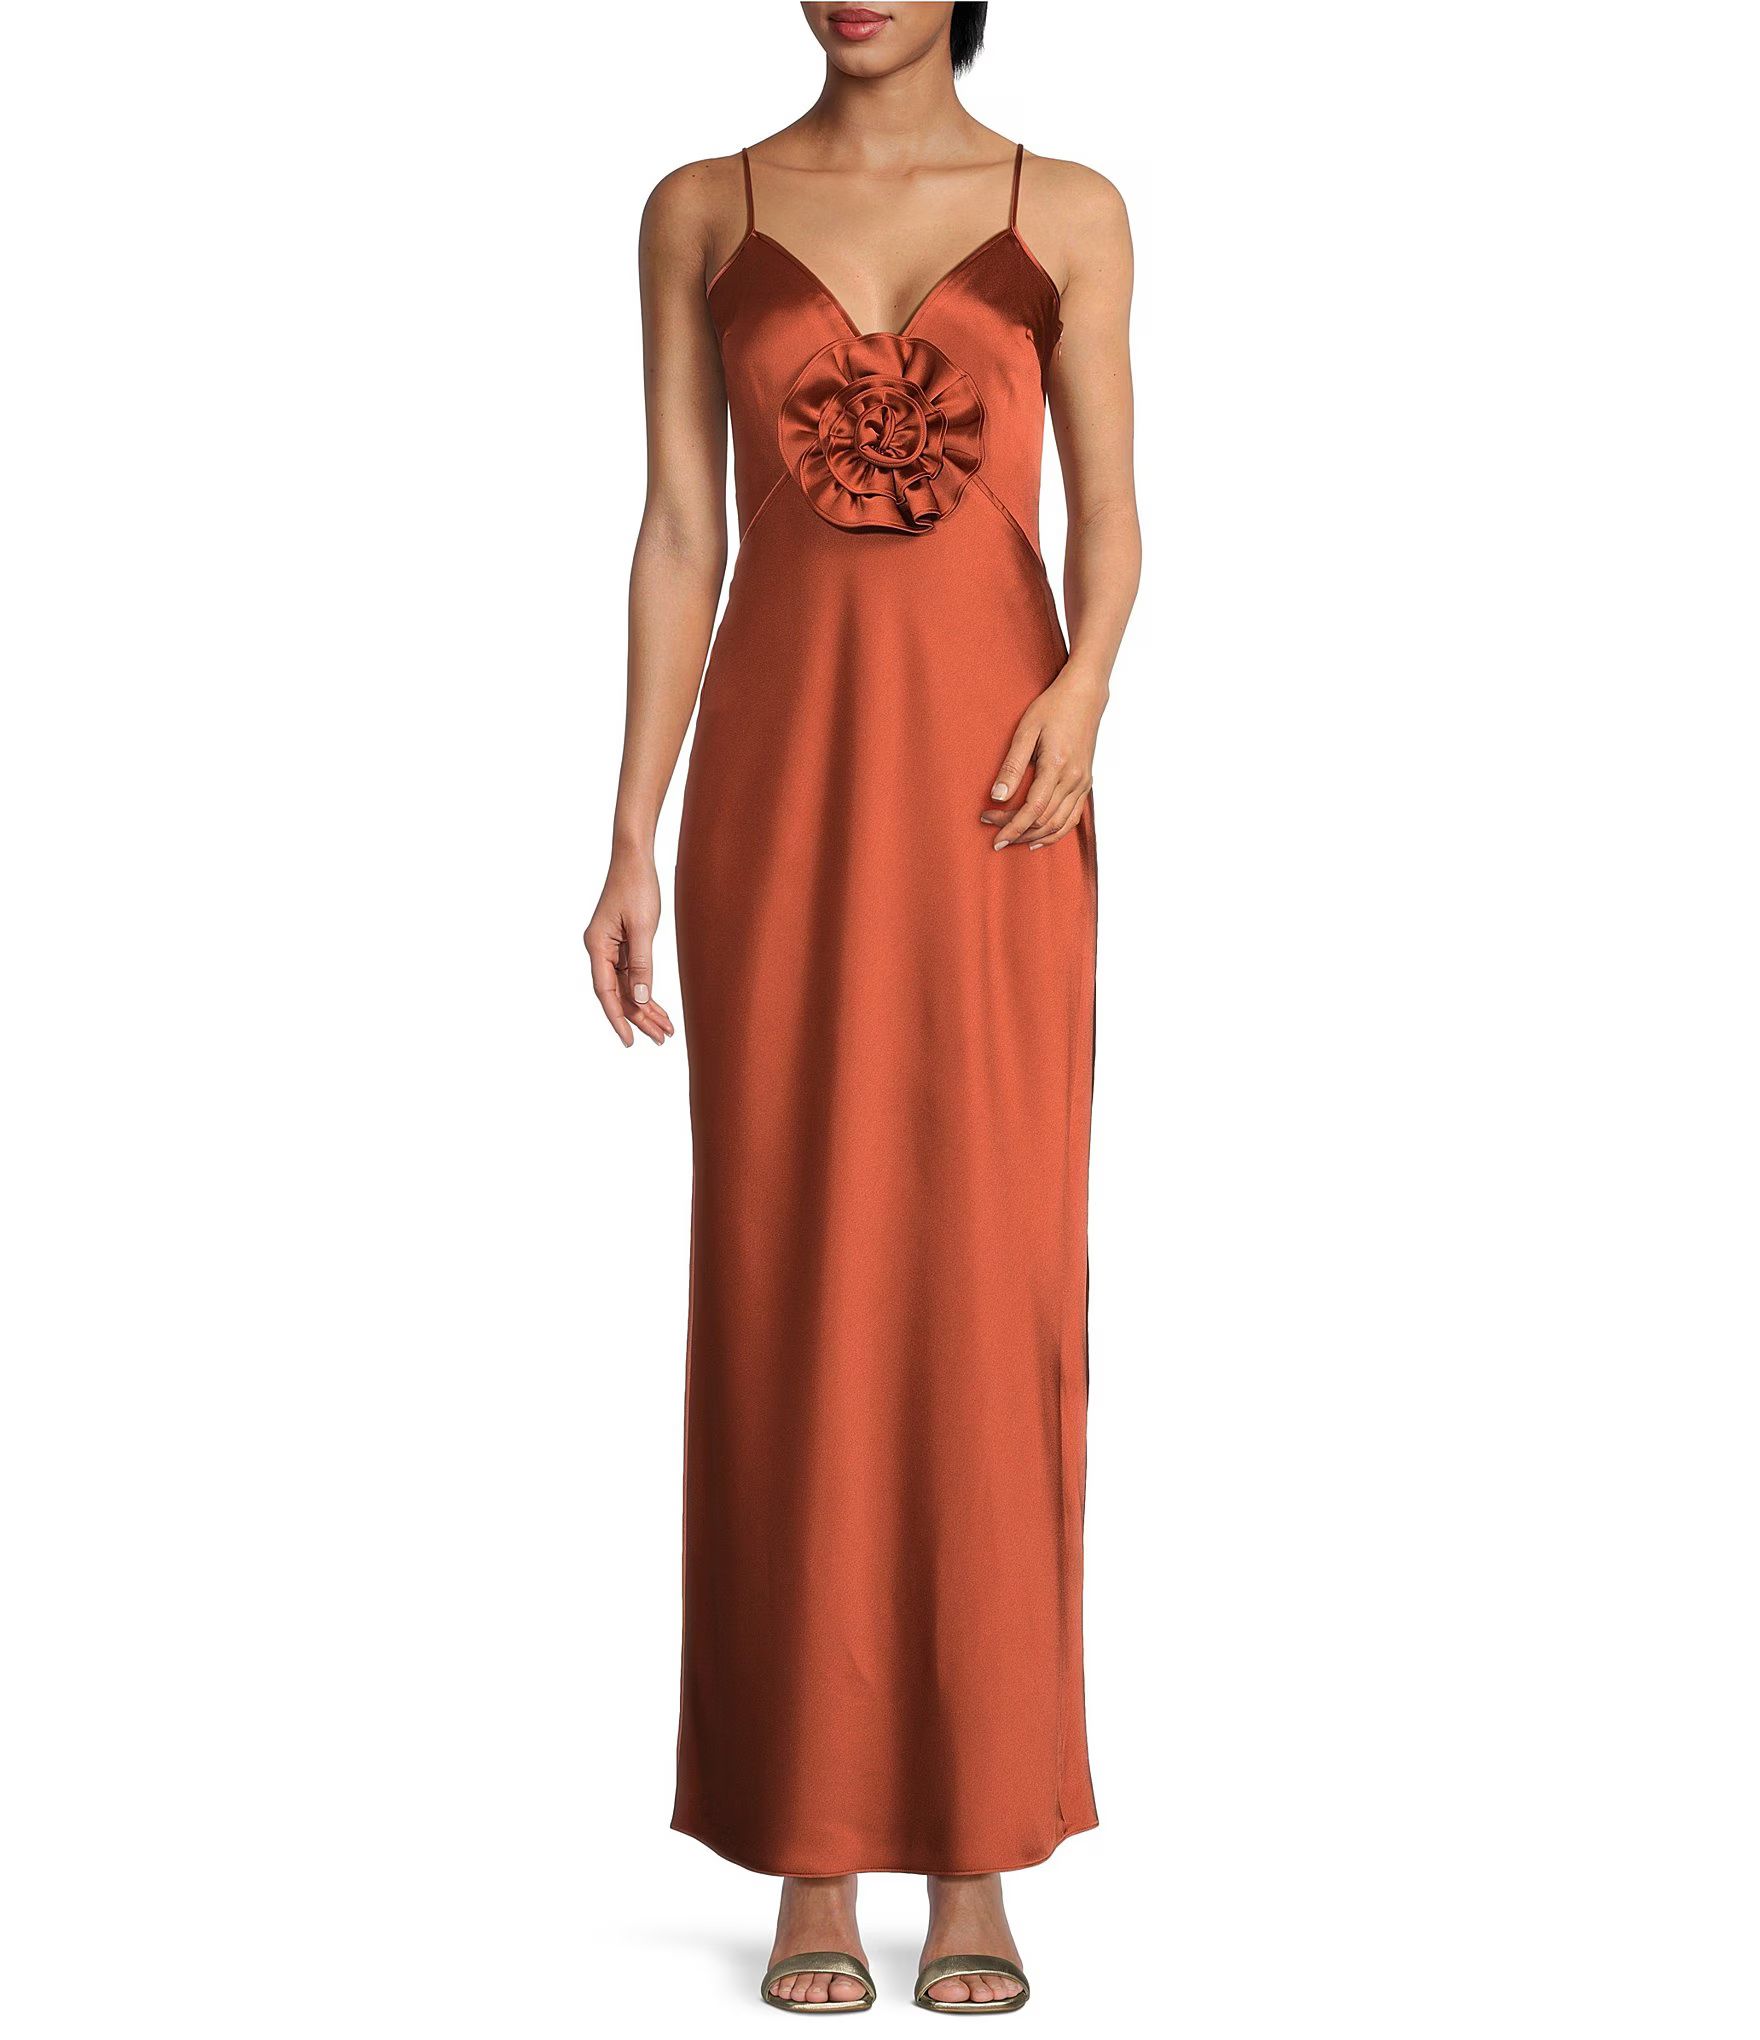 Stephanie Satin V-Neck Rosette Sleeveless Long Dress | Dillard's